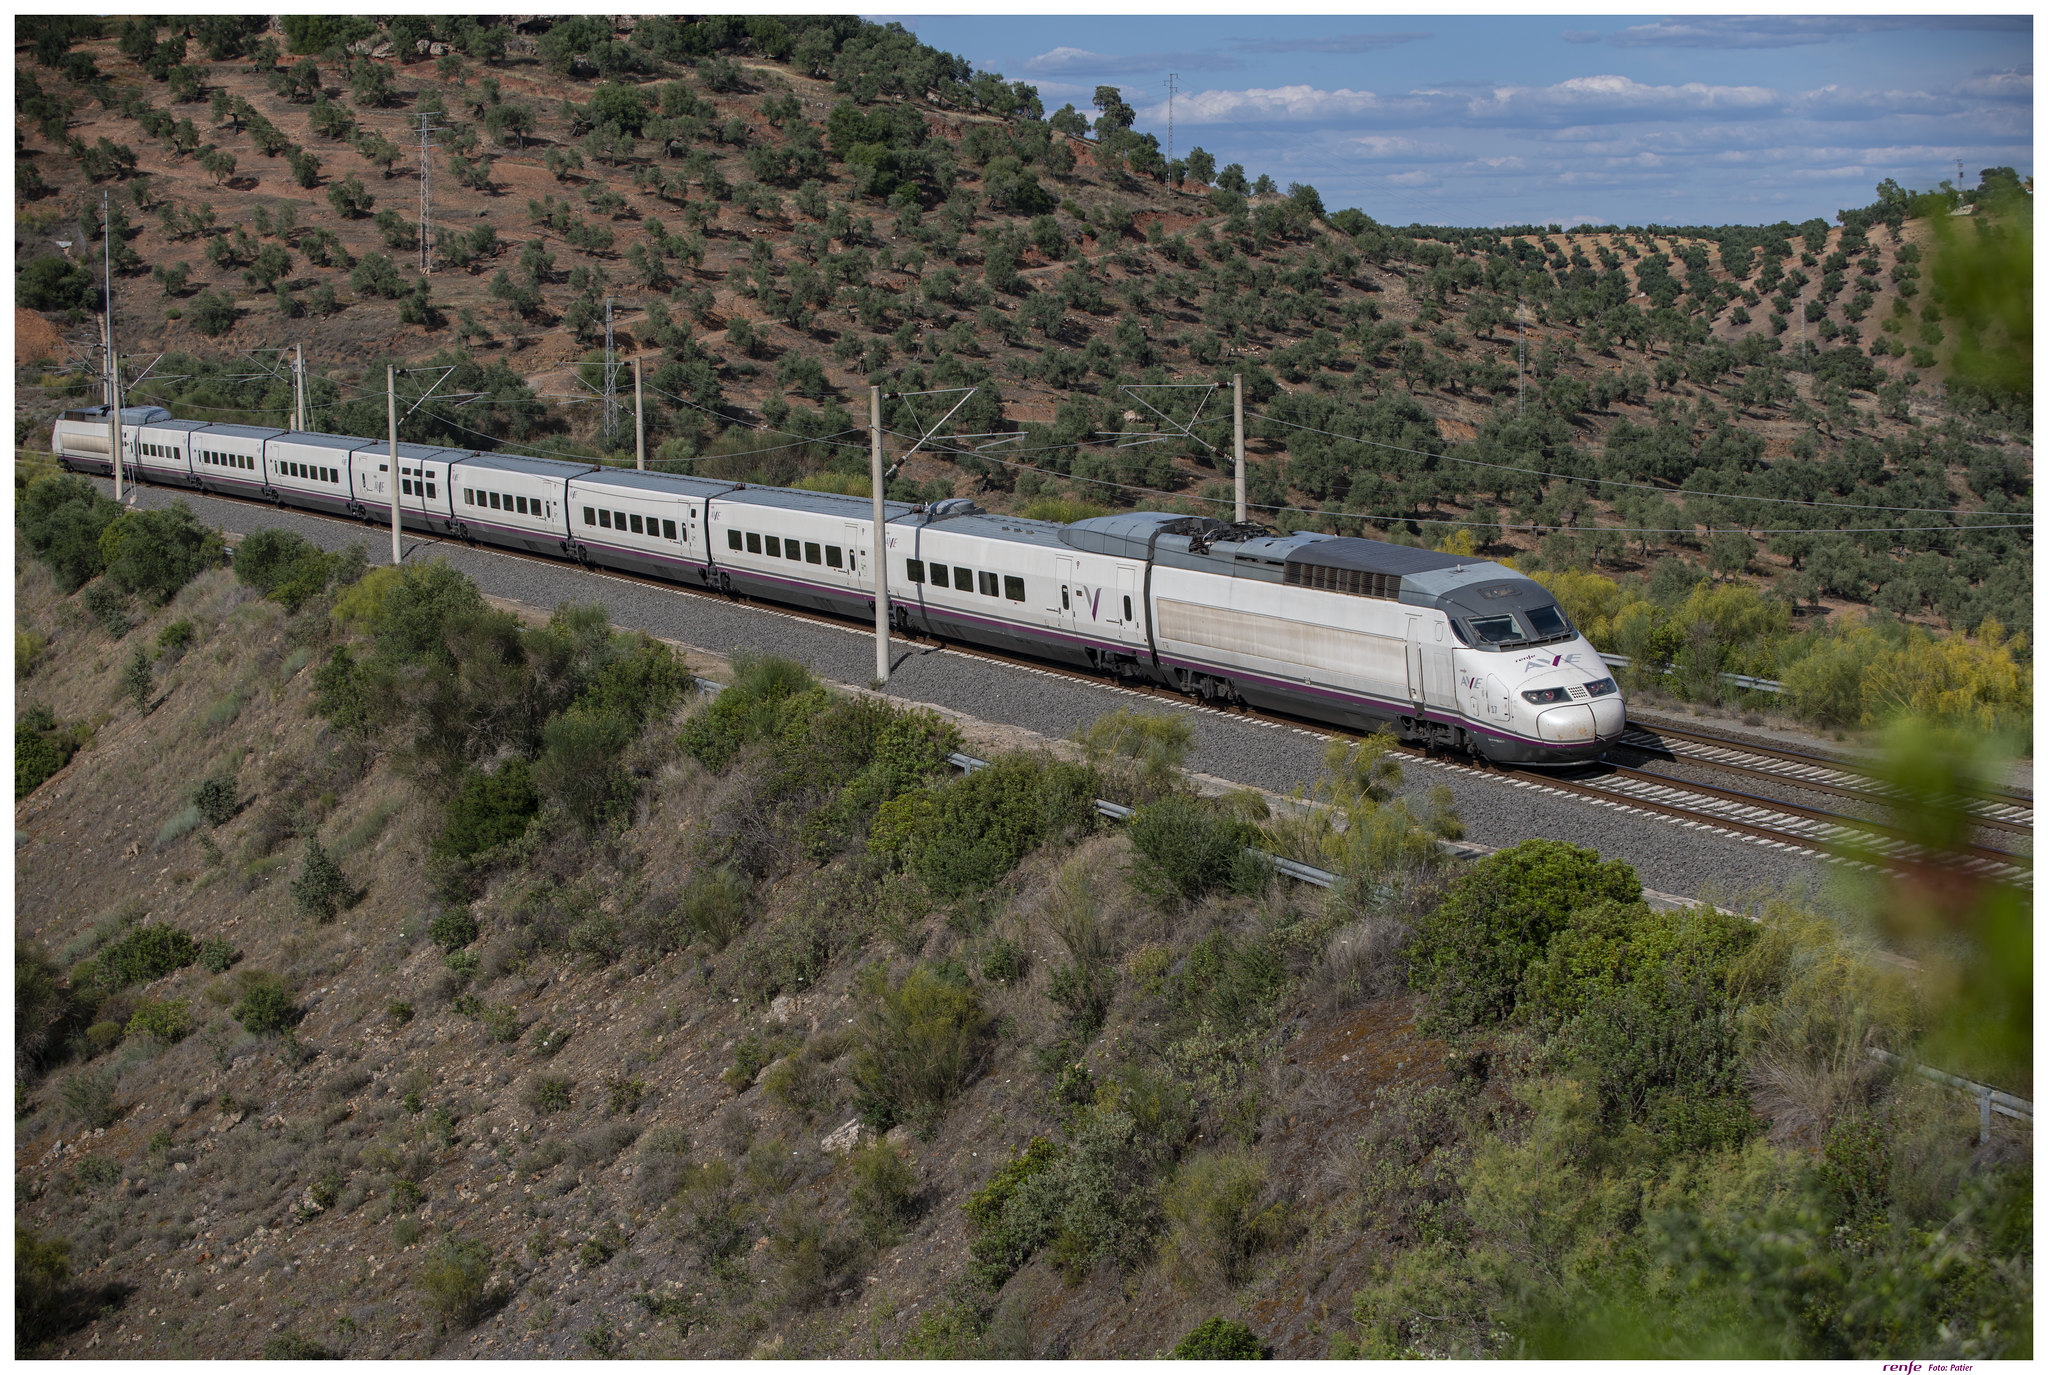  - Le train à grande vitesse AVE Lyon - Barcelone commence à circuler tous les jours